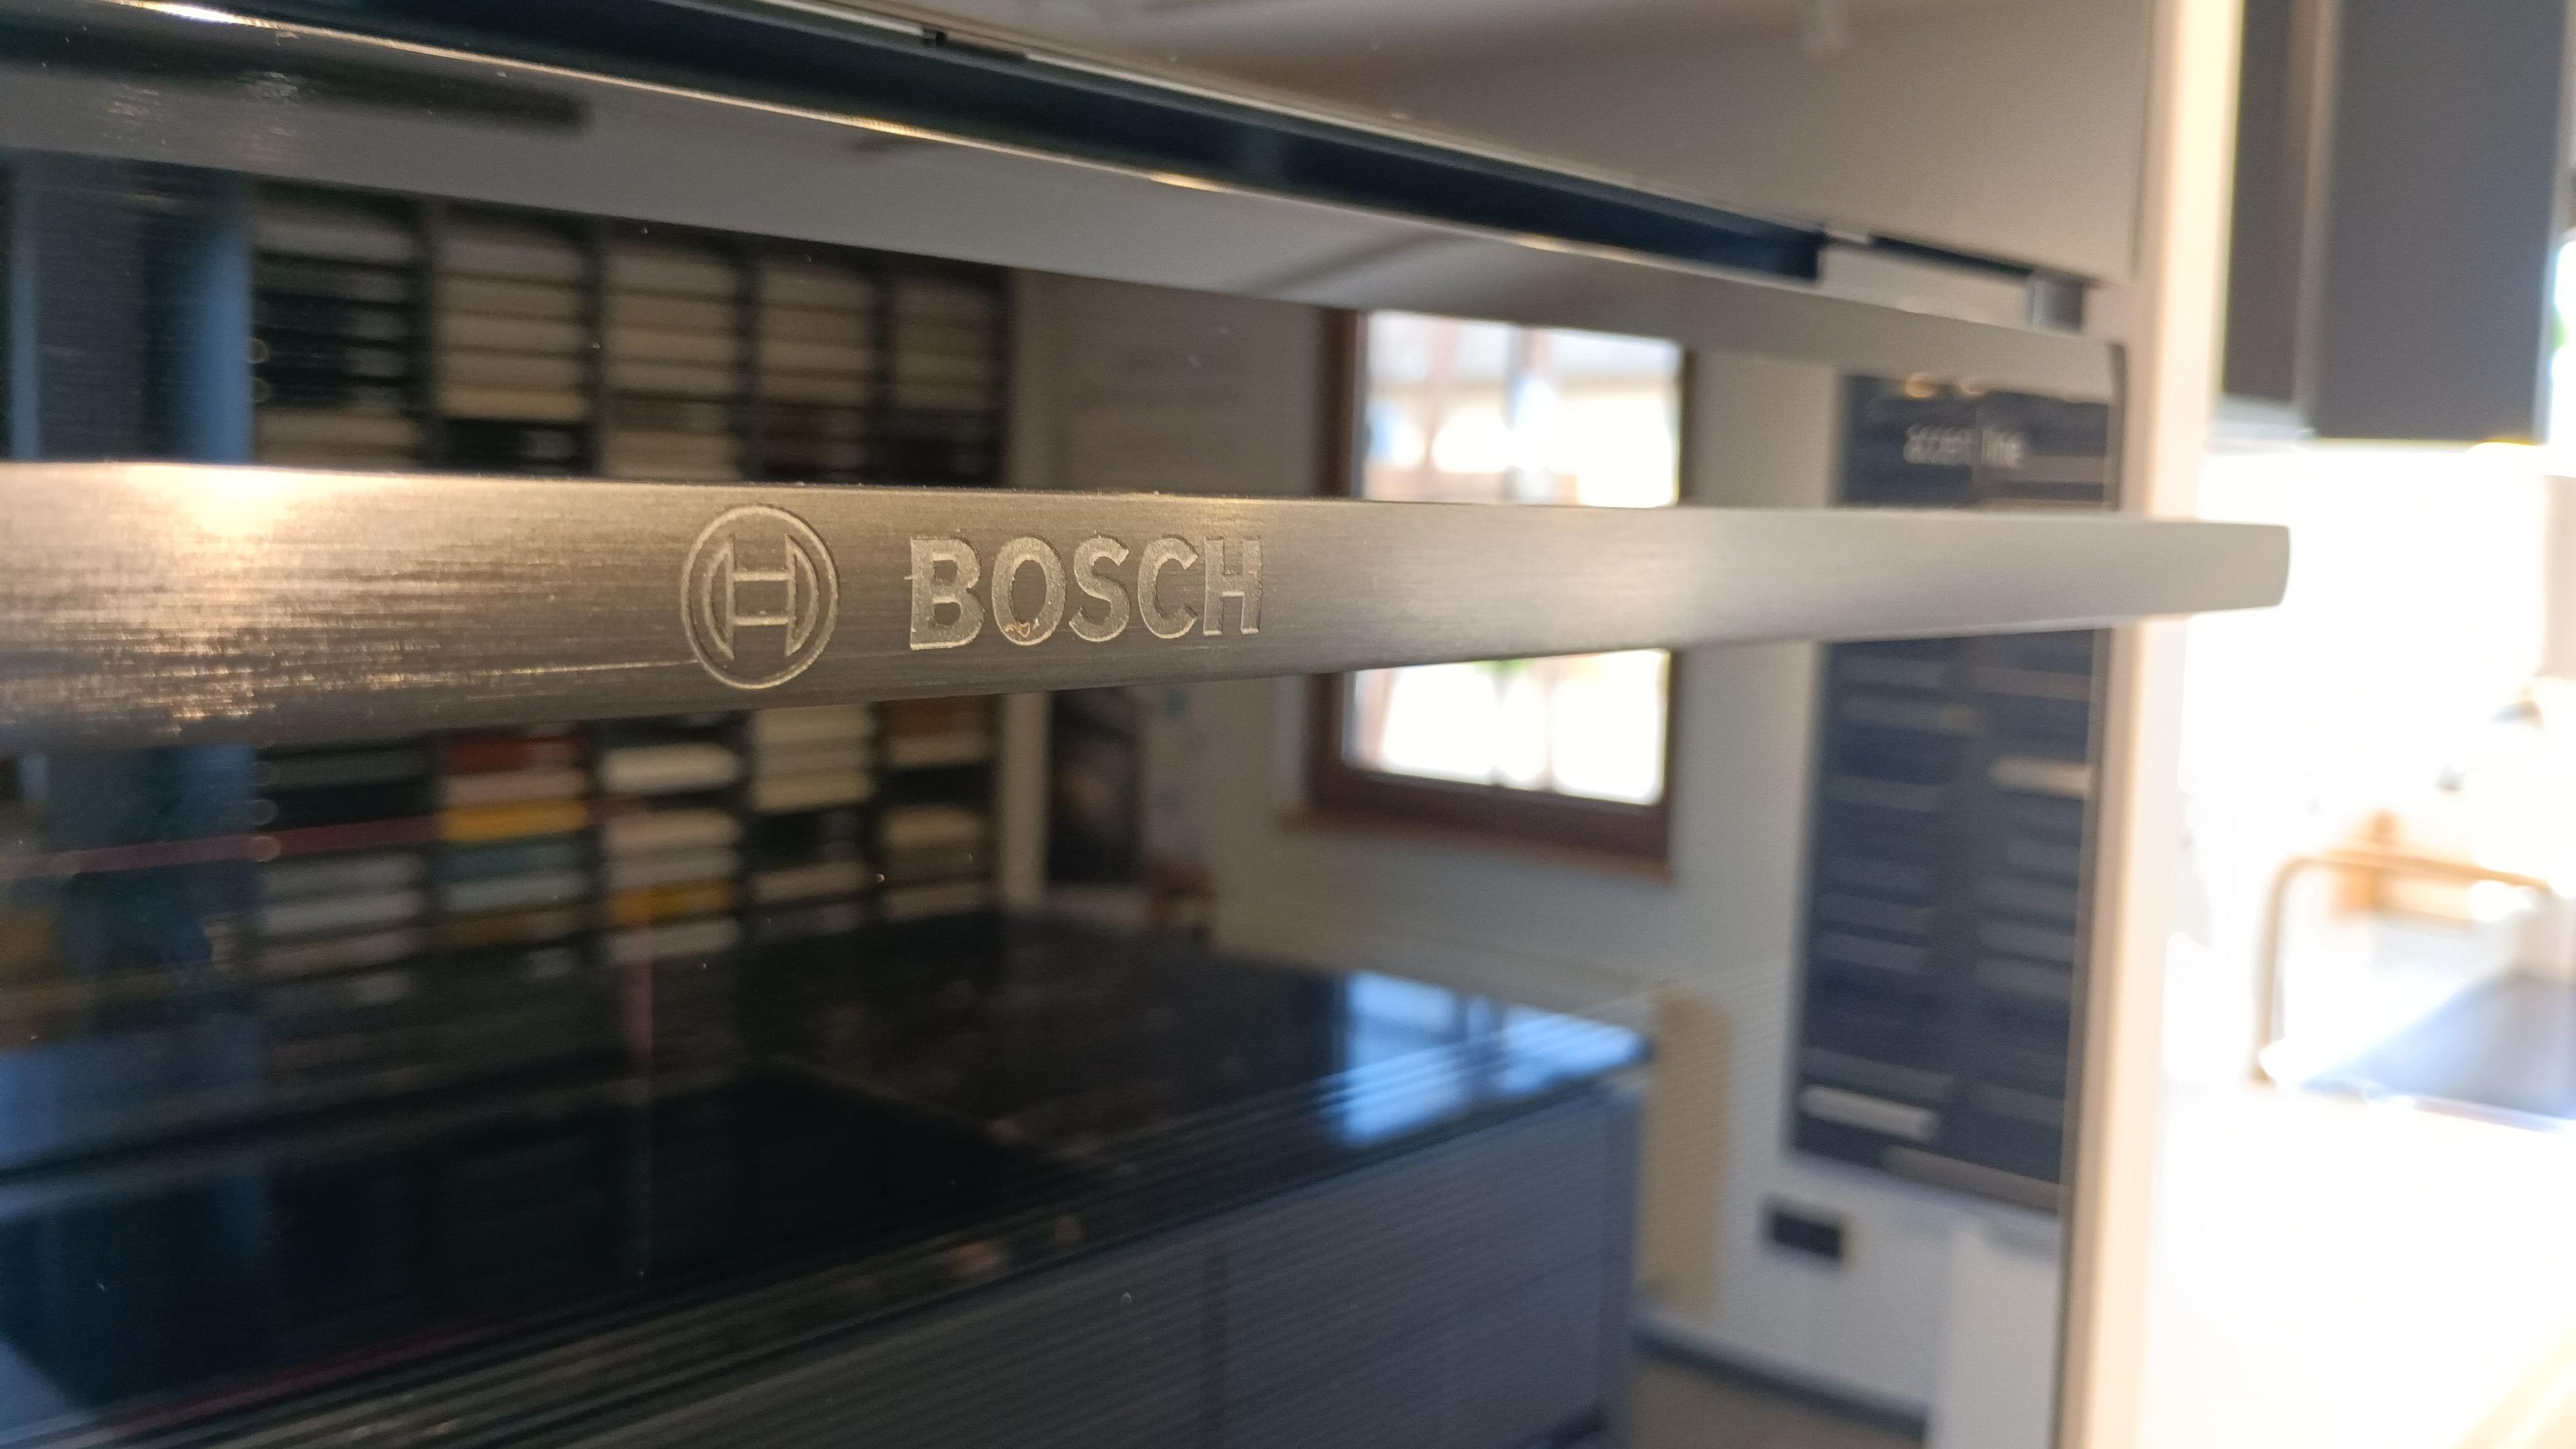 Detailansicht Bosch Backofen